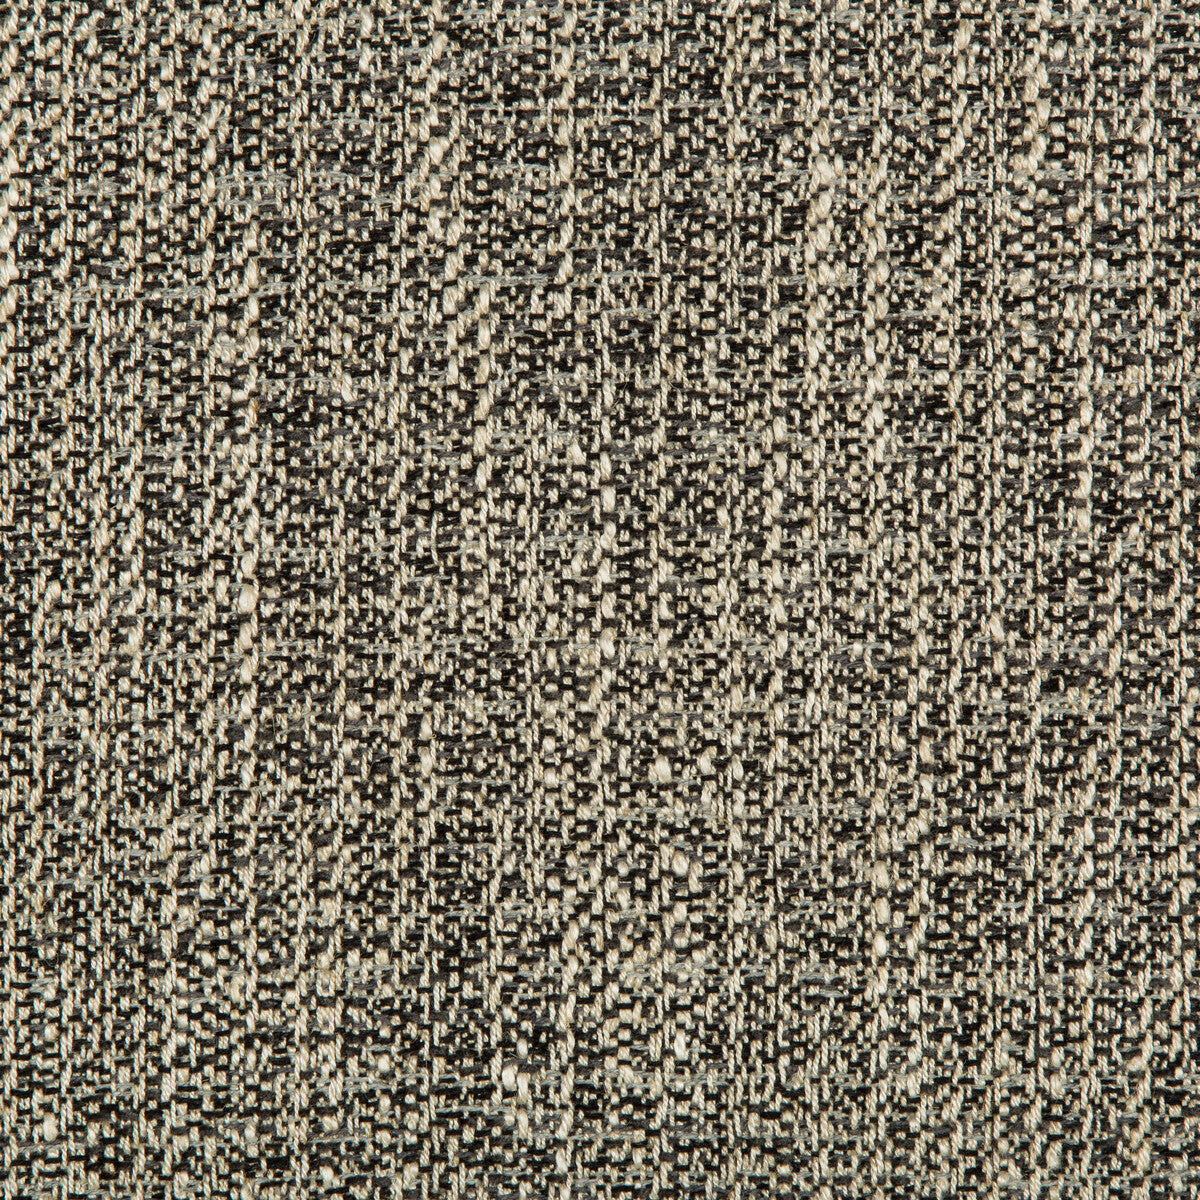 Kravet Design fabric in 35620-218 color - pattern 35620.218.0 - by Kravet Design